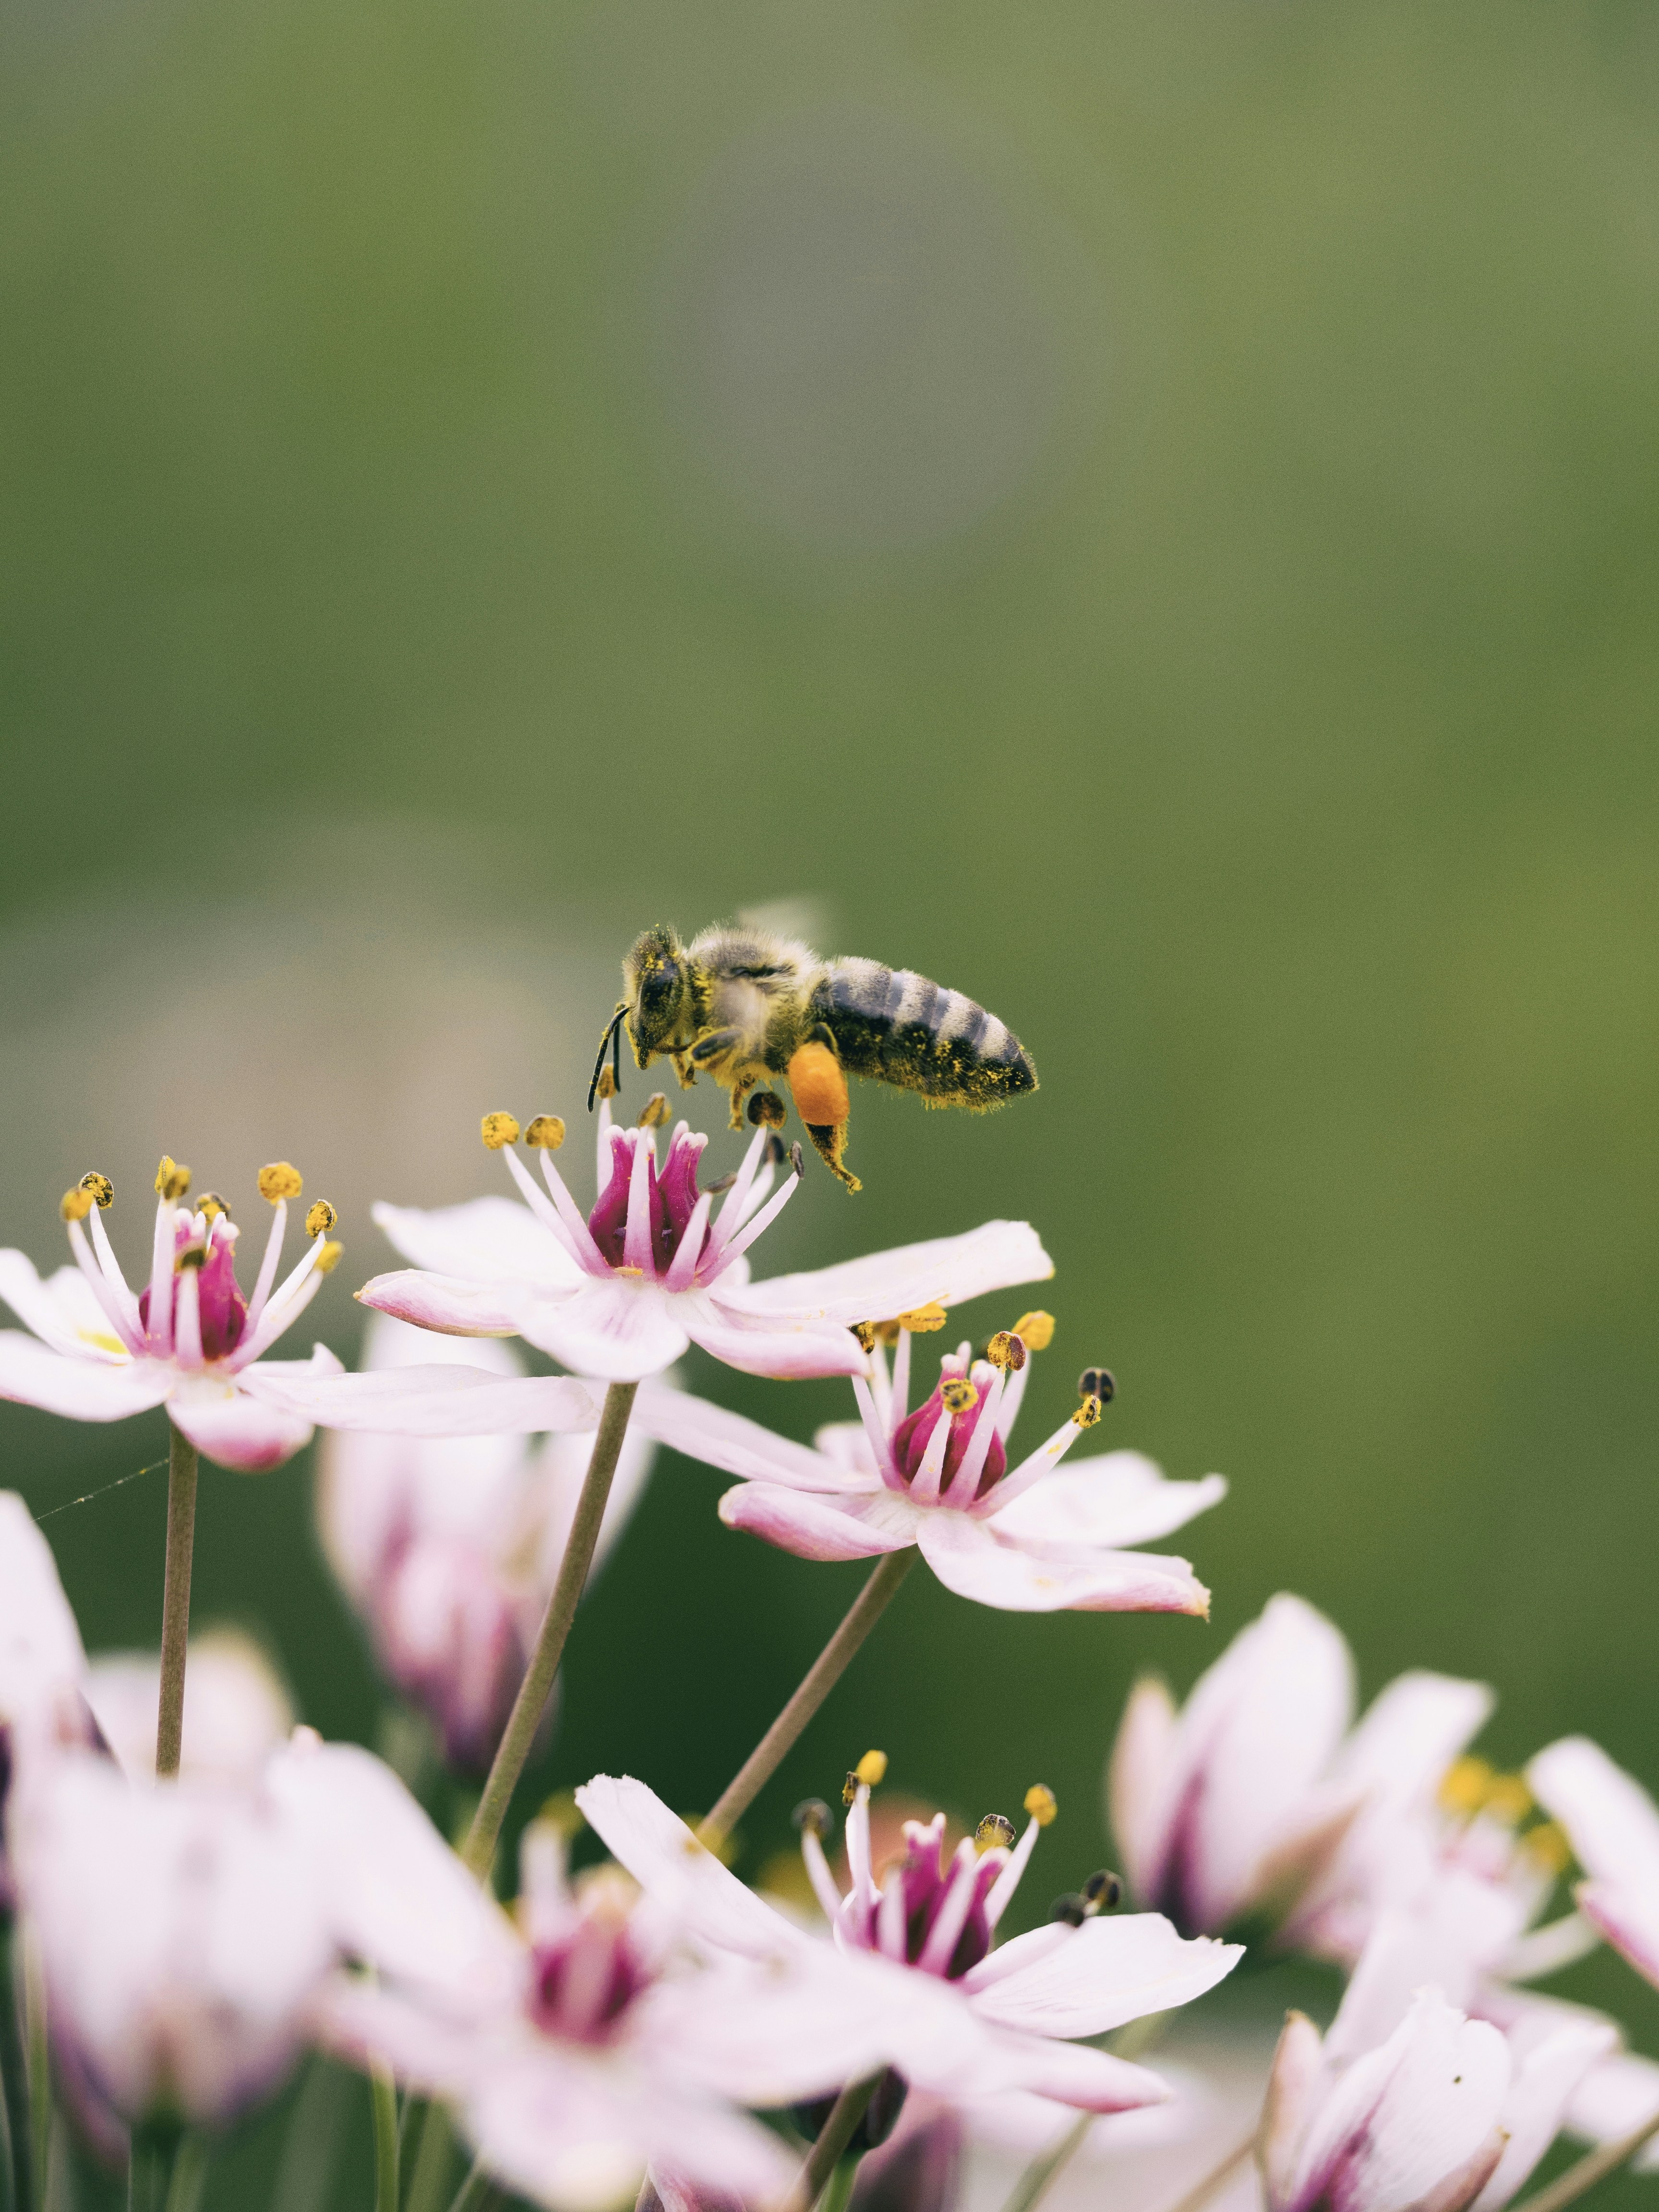 Hornet eating flower